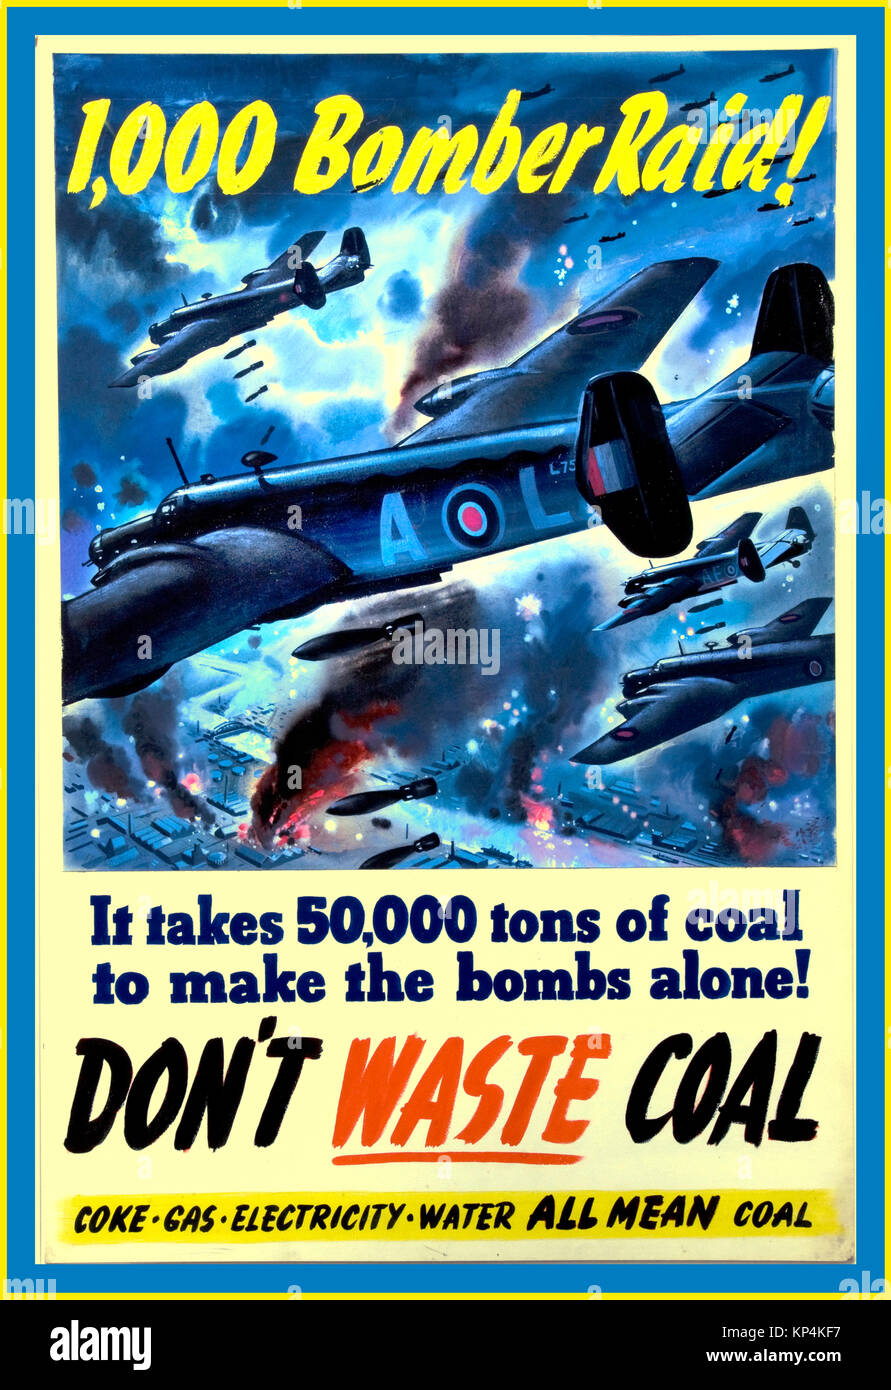 WW2 Vintage UK cartel propagandístico de 1940 gobierno Británico alerta durante la II Guerra Mundial "1000 Bomber Raid-NO PIERDAS CARBÓN" Foto de stock